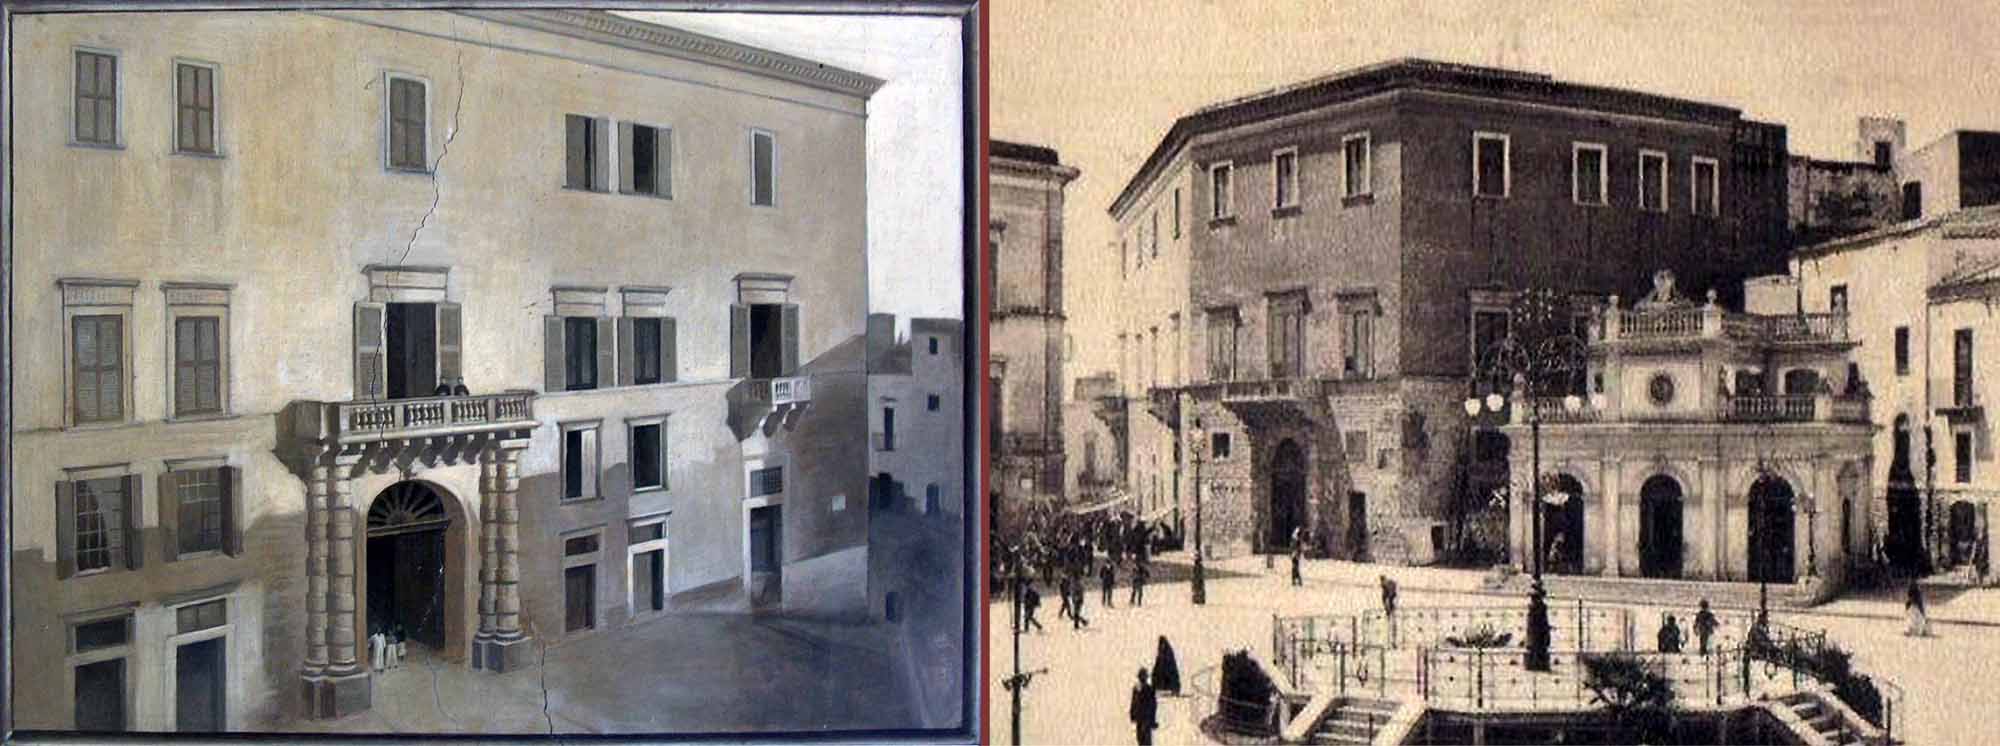 Palazzo Ducale a fine Ottocento: su largo La Corte in un dipinto, su largo Catuma in una foto